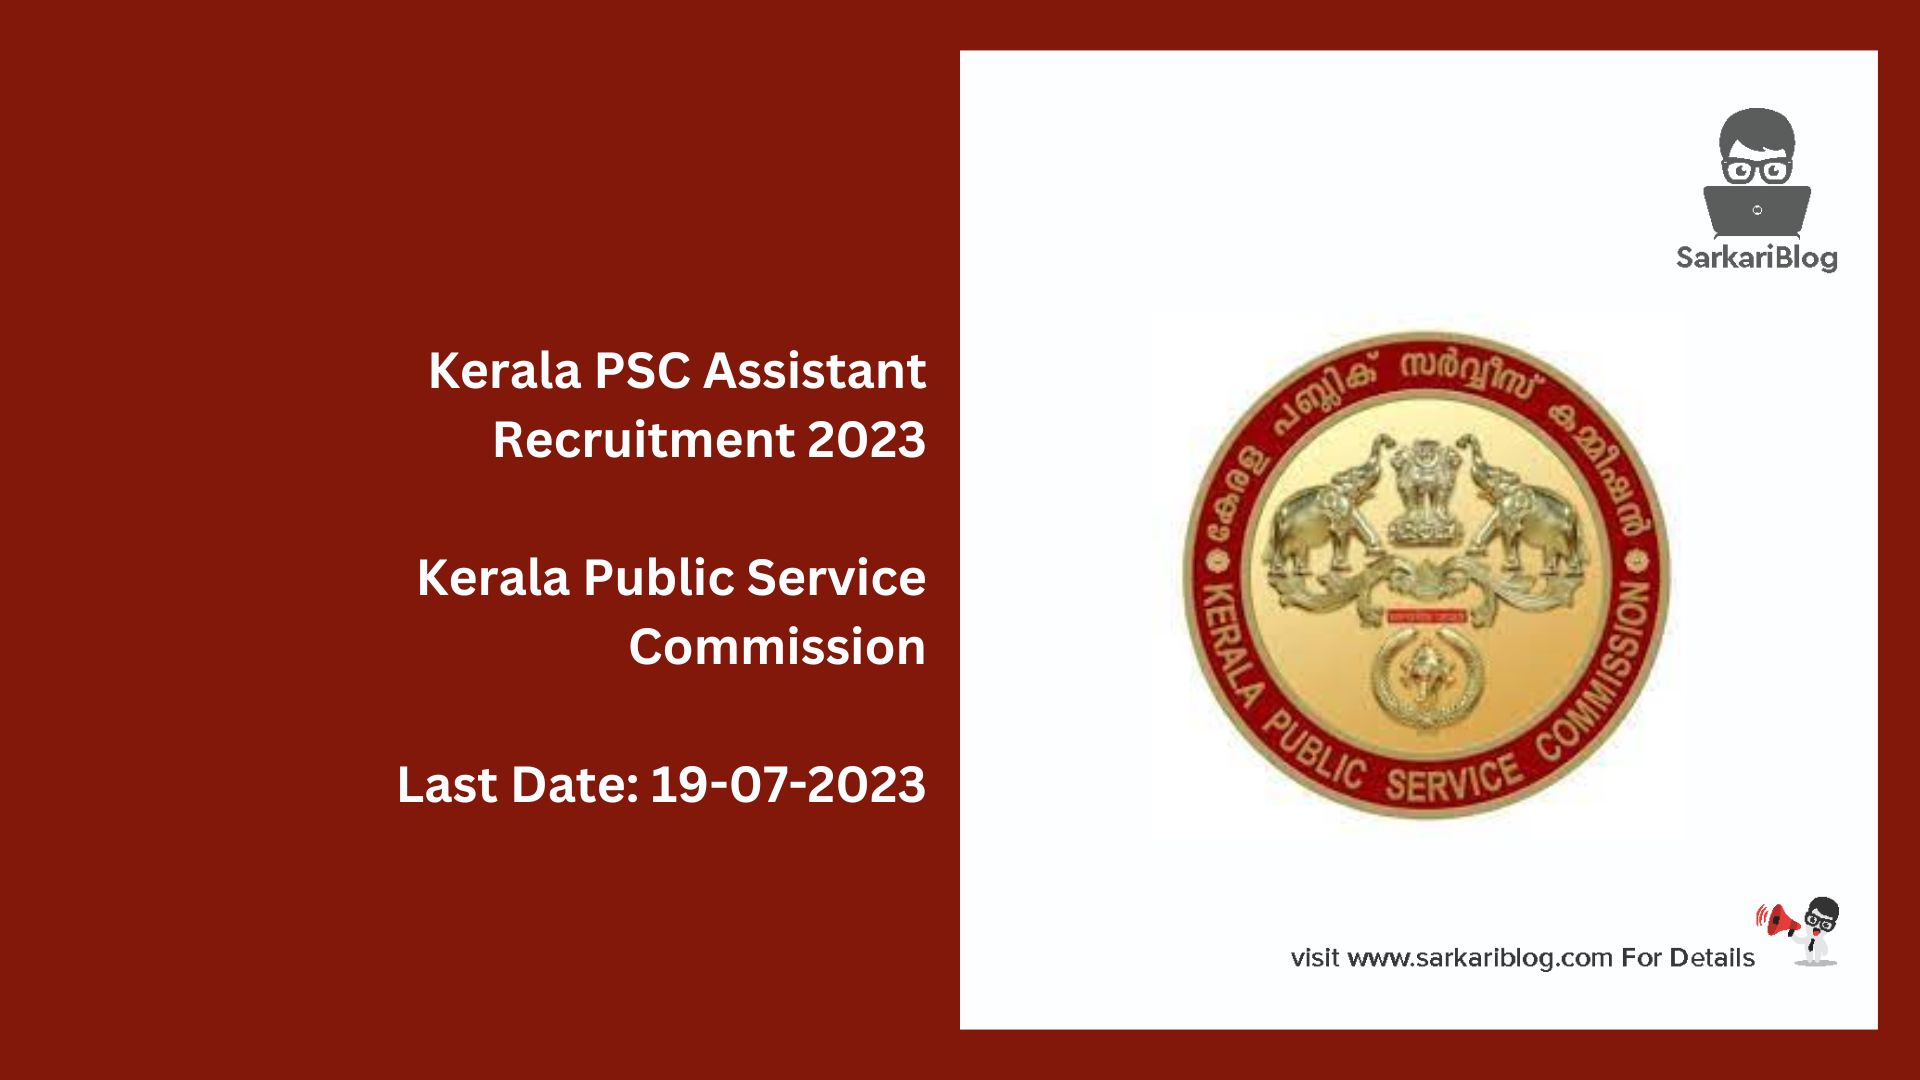 Kerala PSC Assistant Recruitment 2023